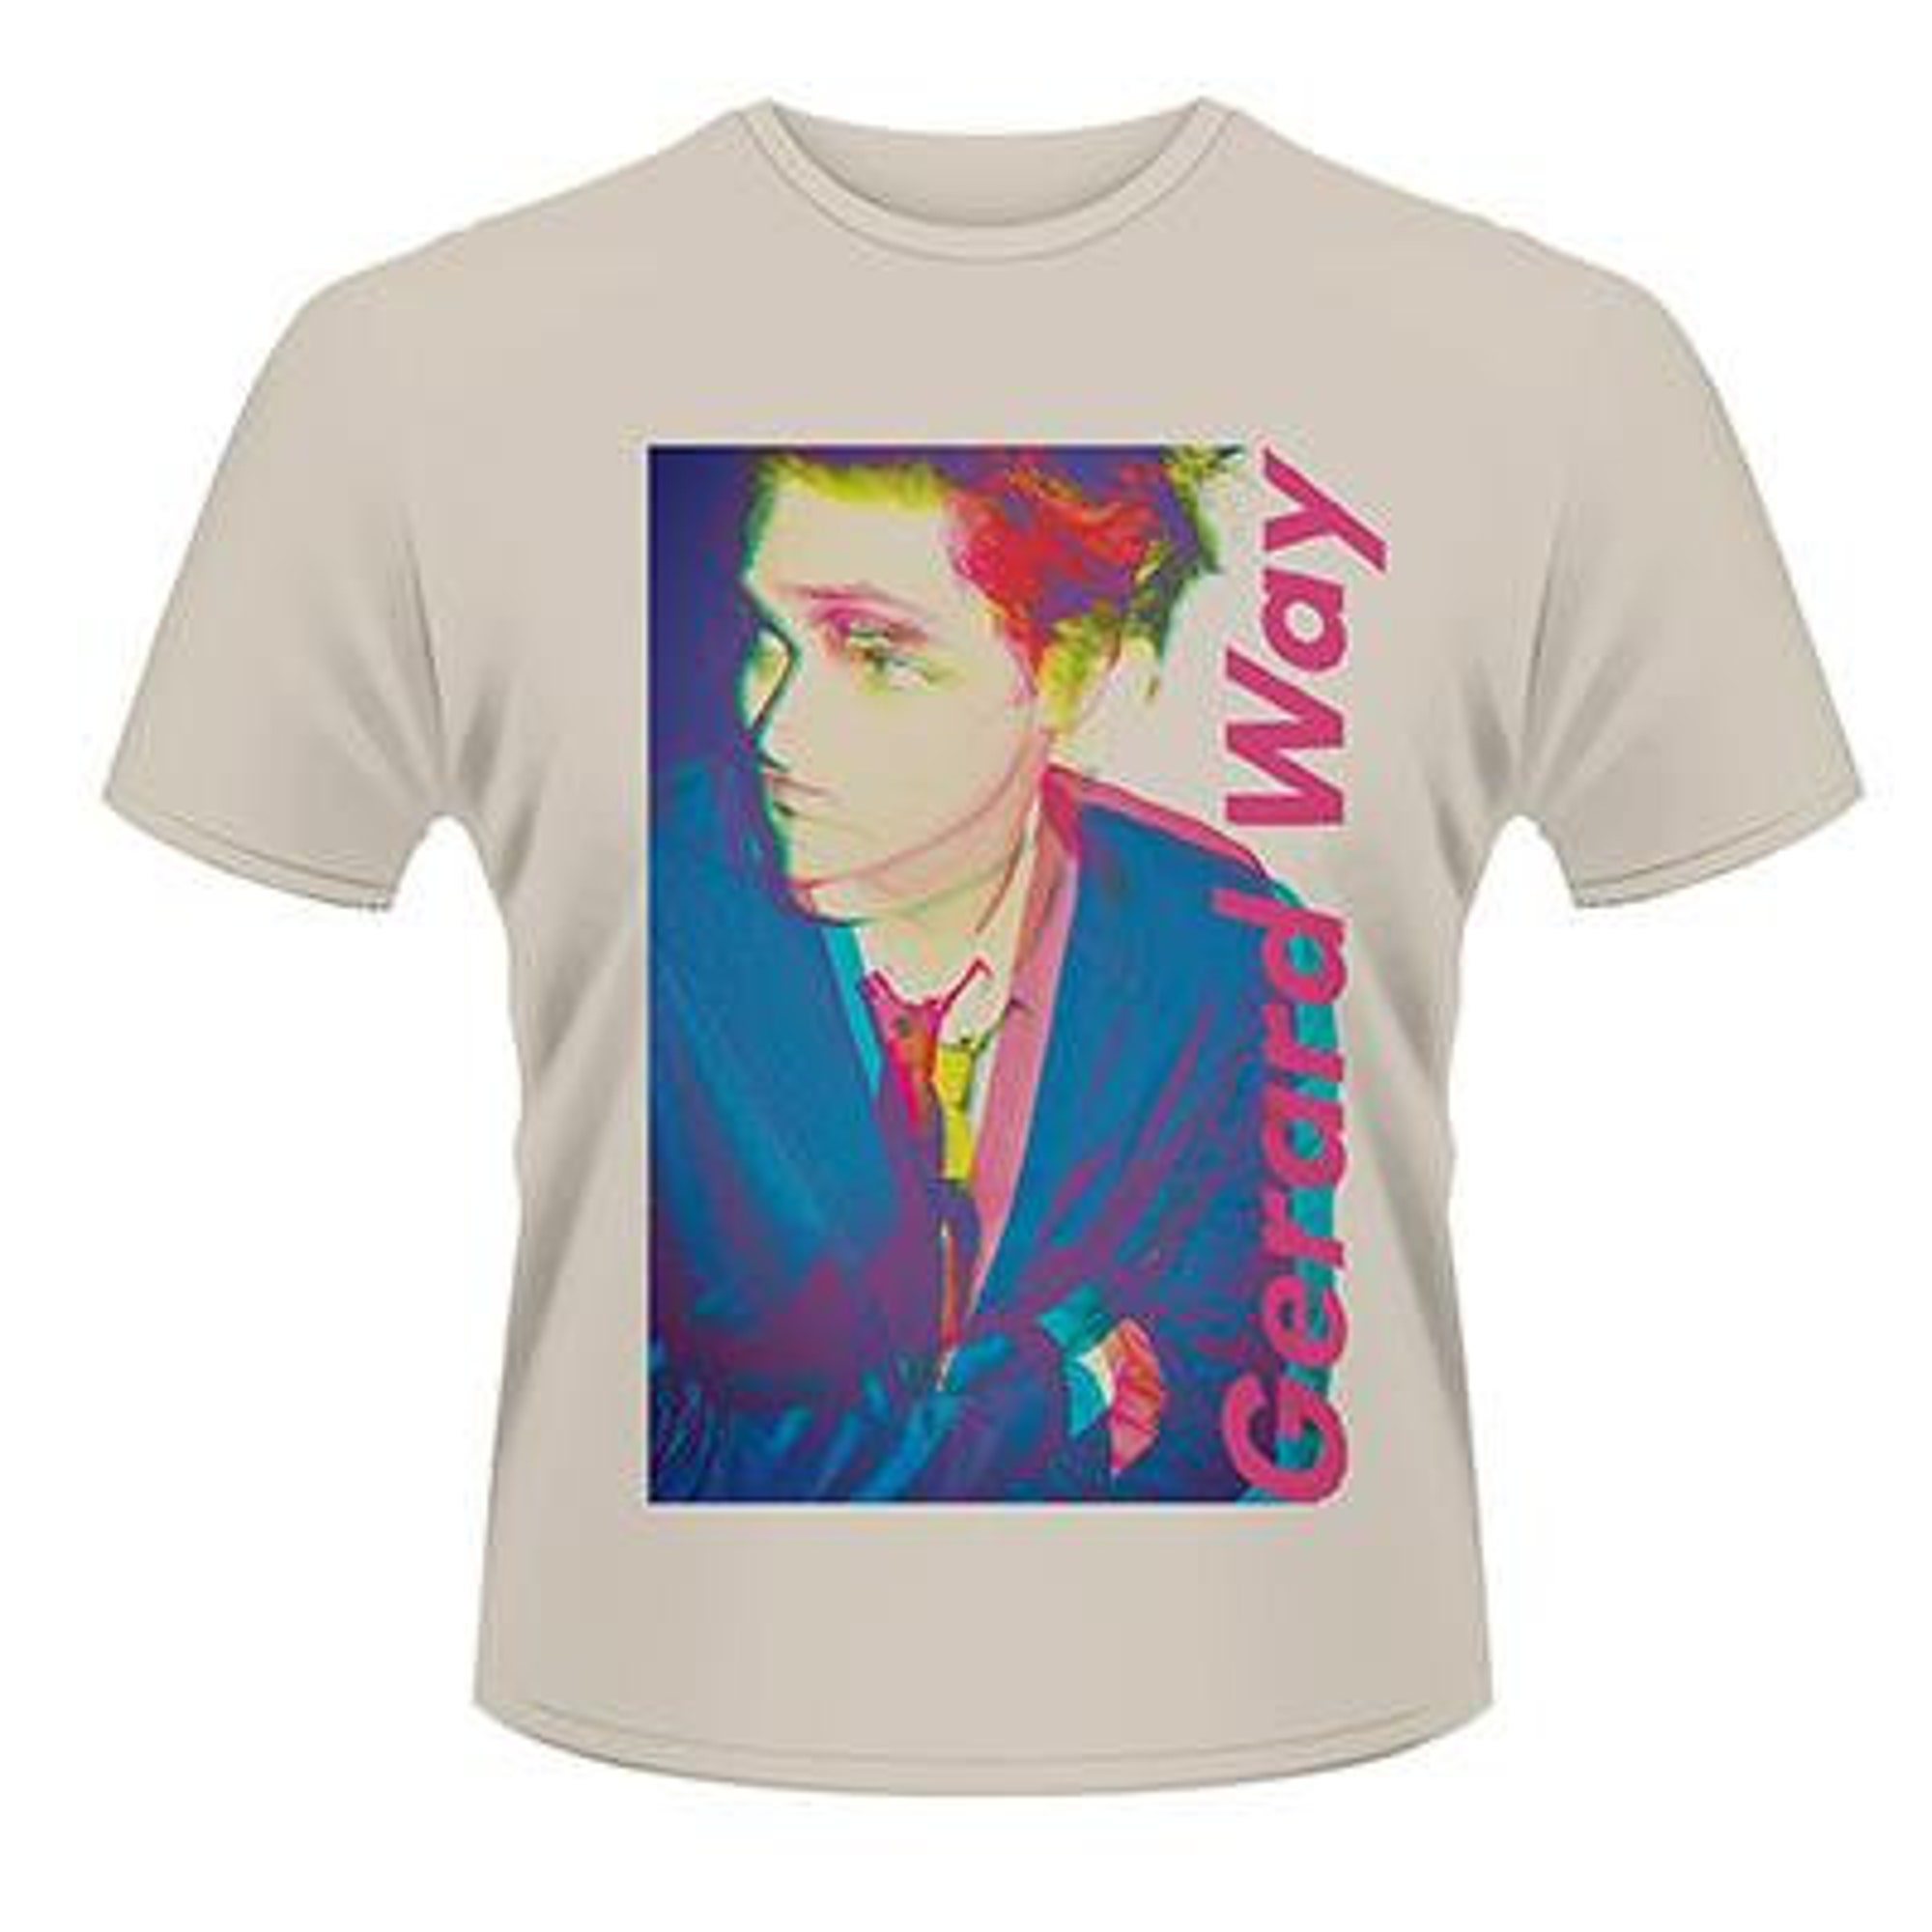 Discover Gerard Way T-Shirt - Process